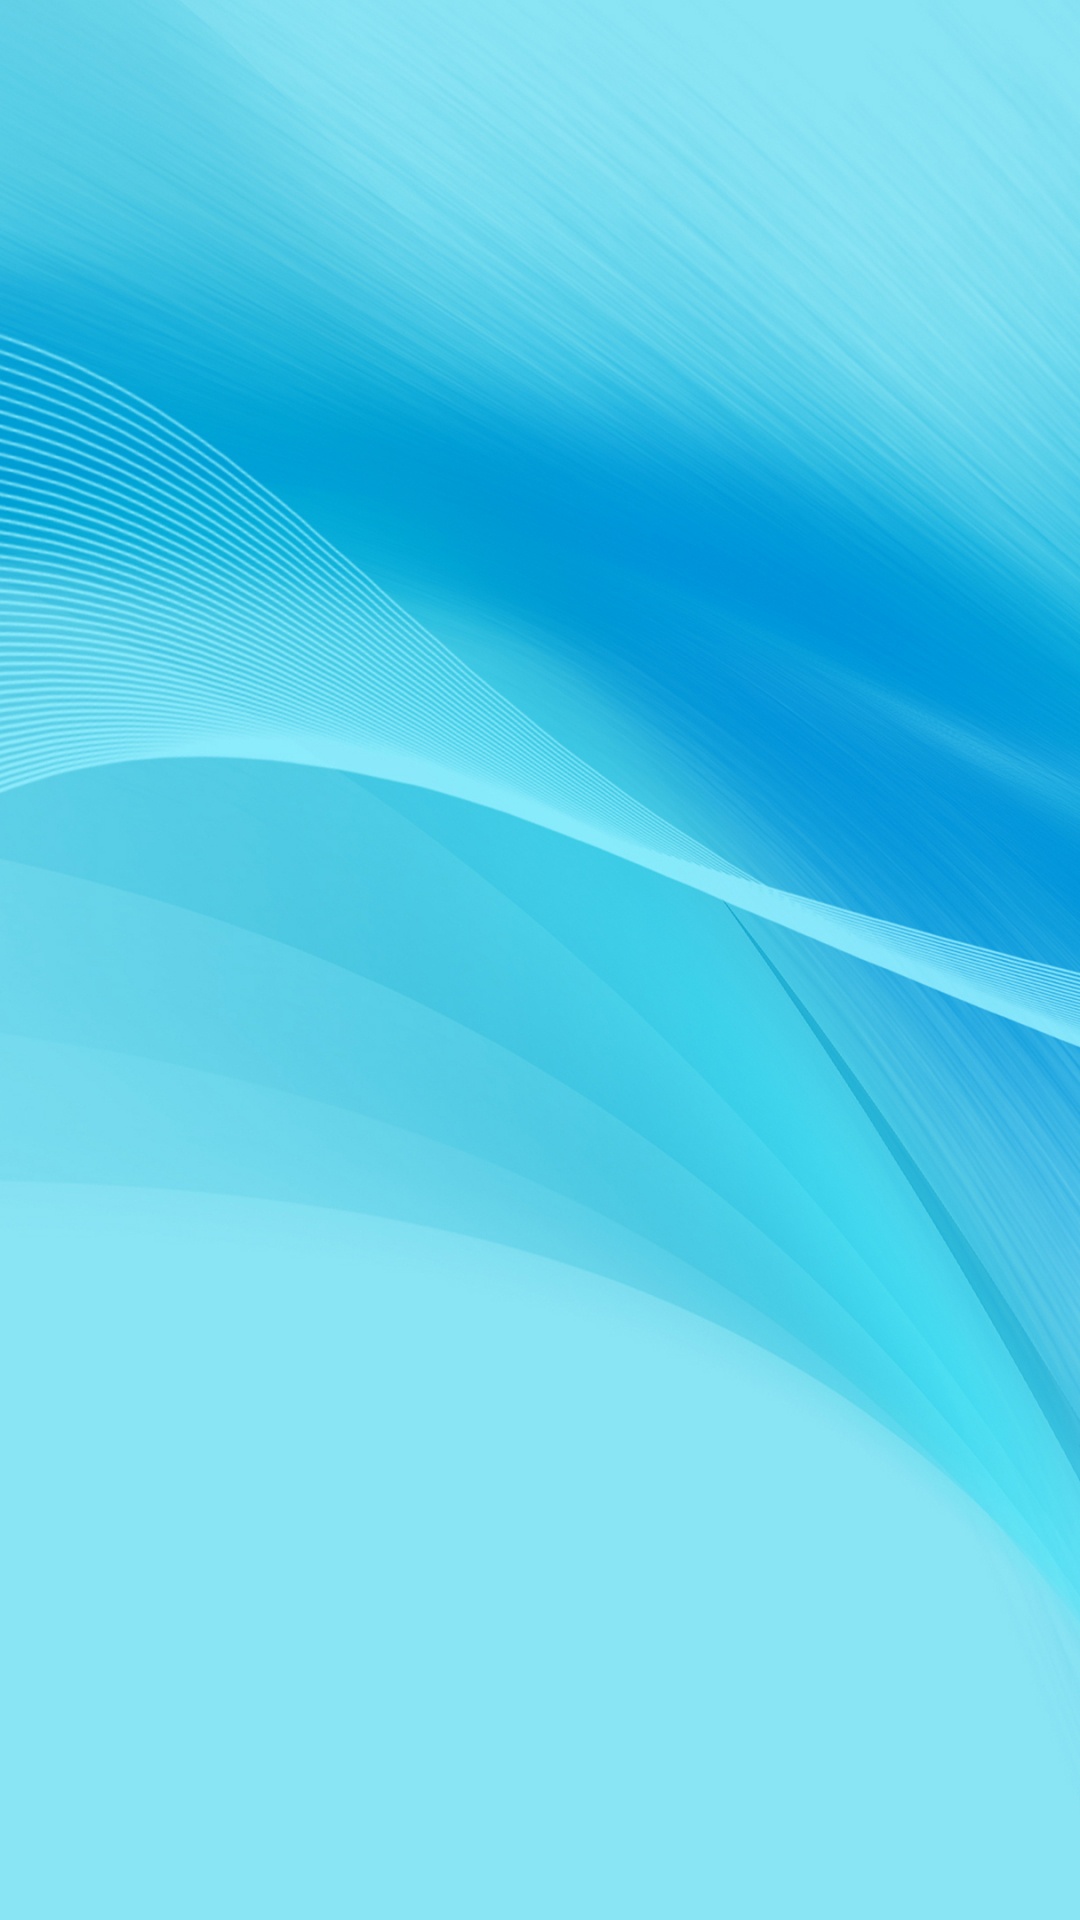 Huawei, Huawei Nova, Huawei Nova 2, Blue, Colorfulness. Wallpaper in 1080x1920 Resolution